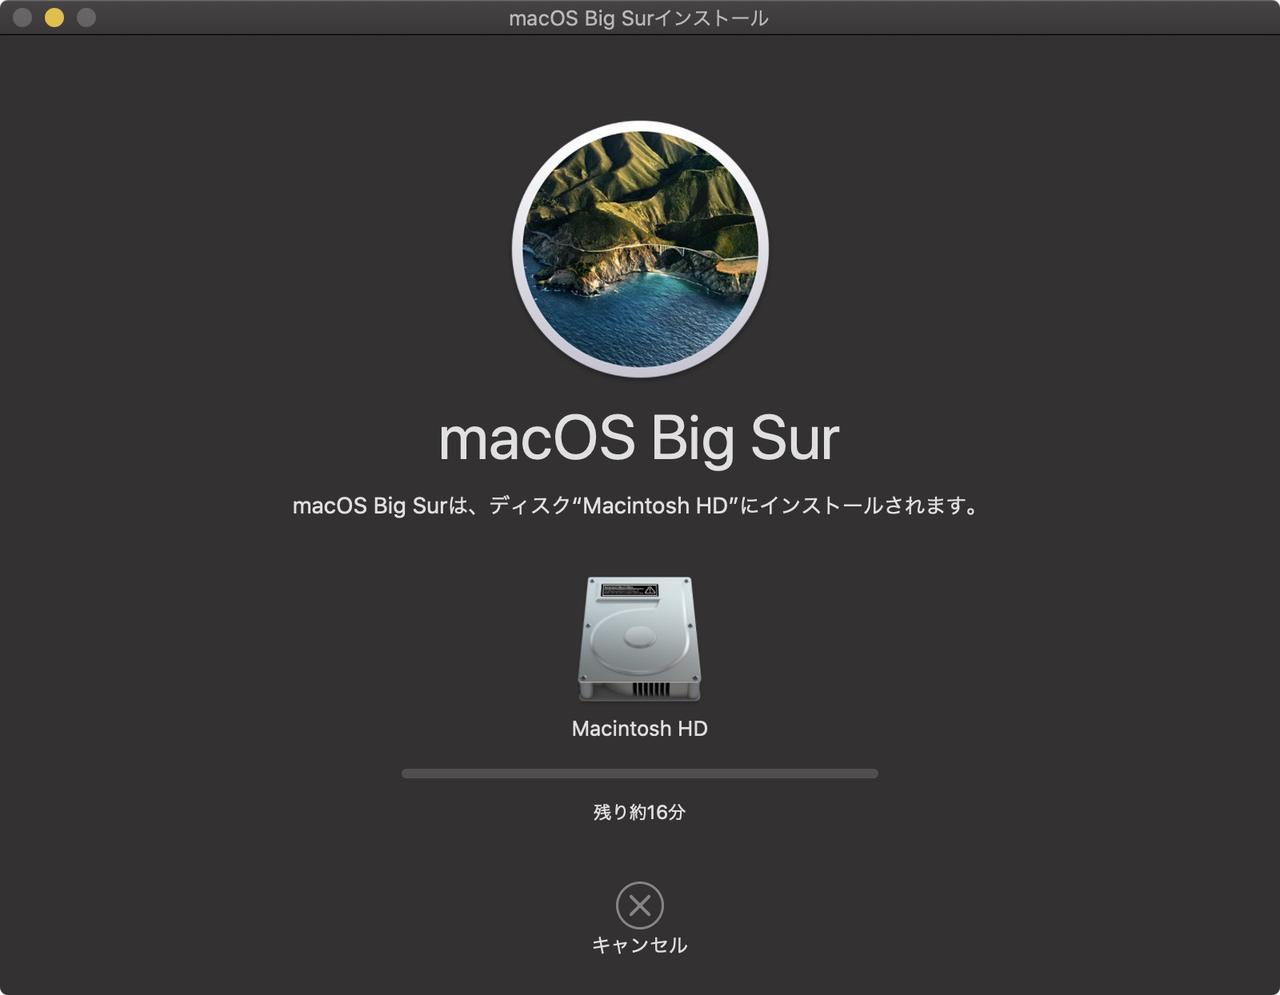 iPhoneばっかりで忘れてない？ macOS｢Big Sur｣、今日から公開ですさー